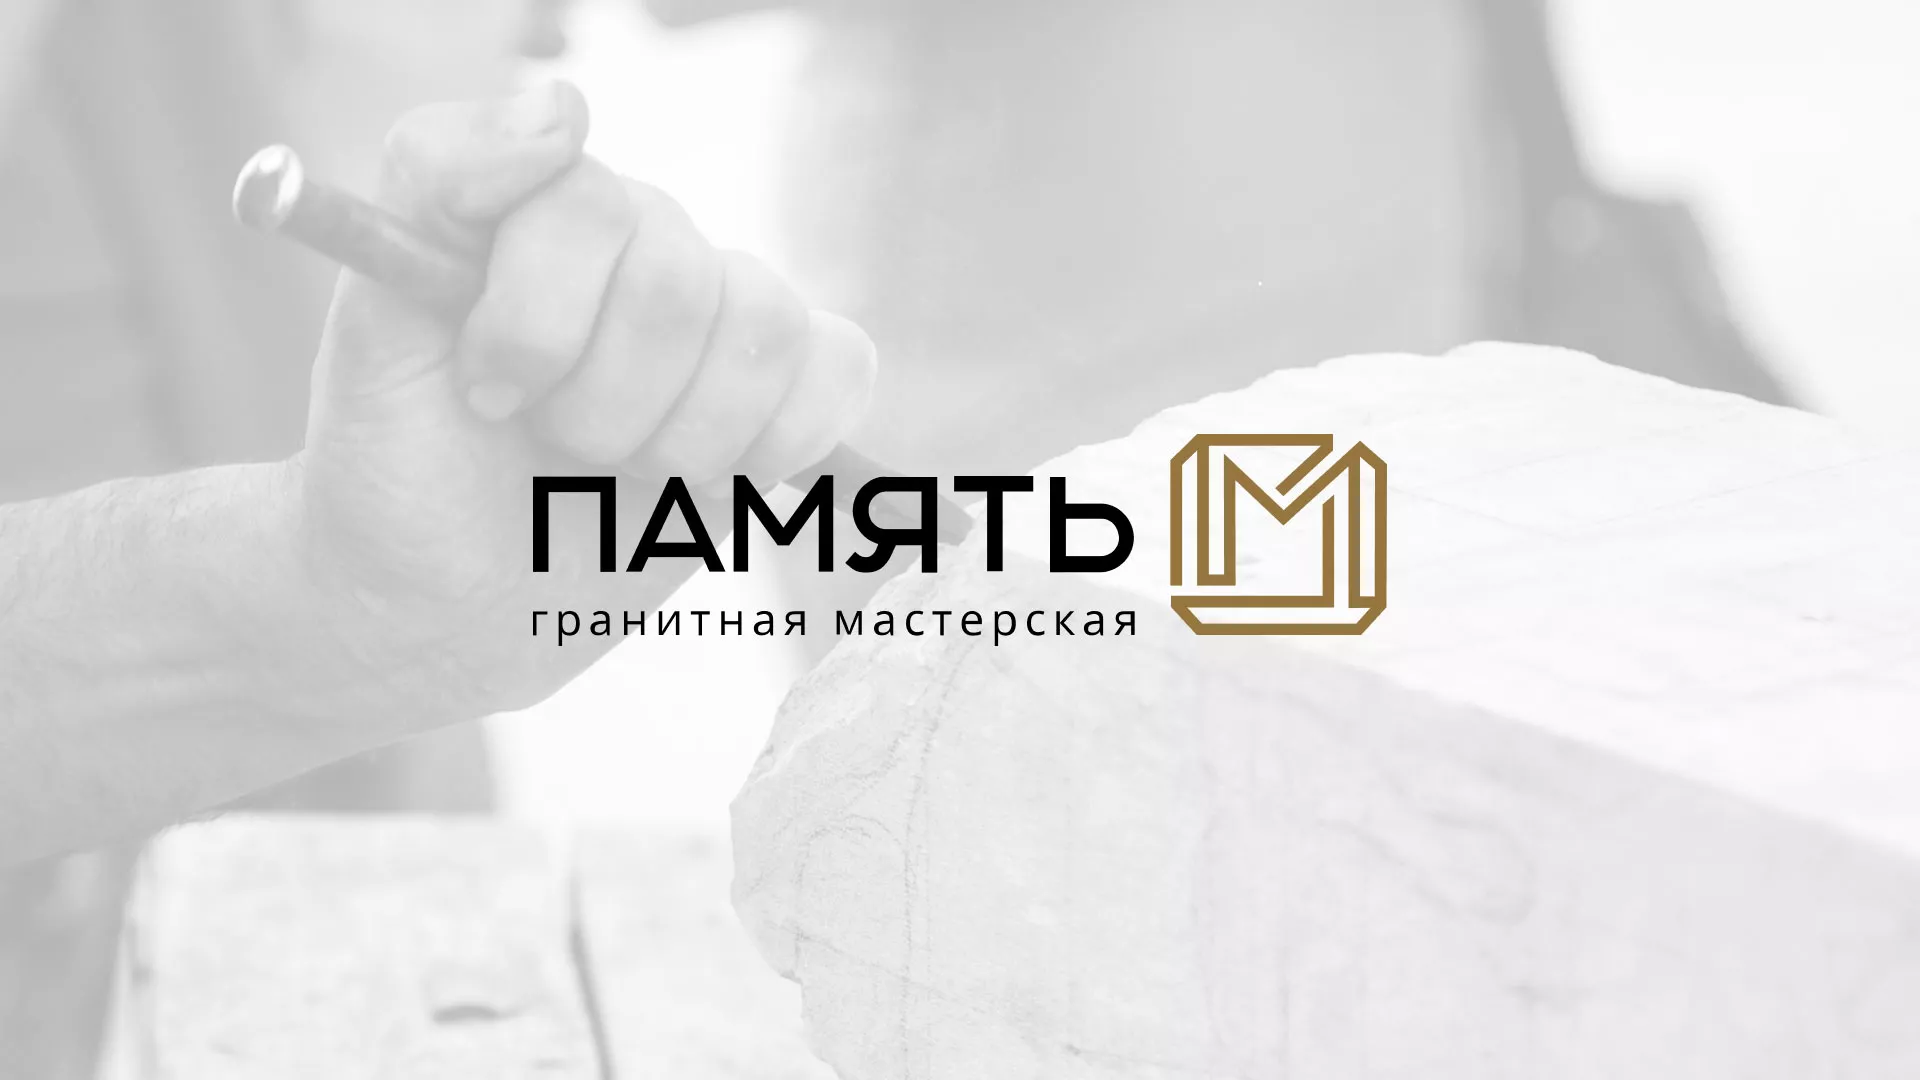 Разработка логотипа и сайта компании «Память-М» в Грязовце